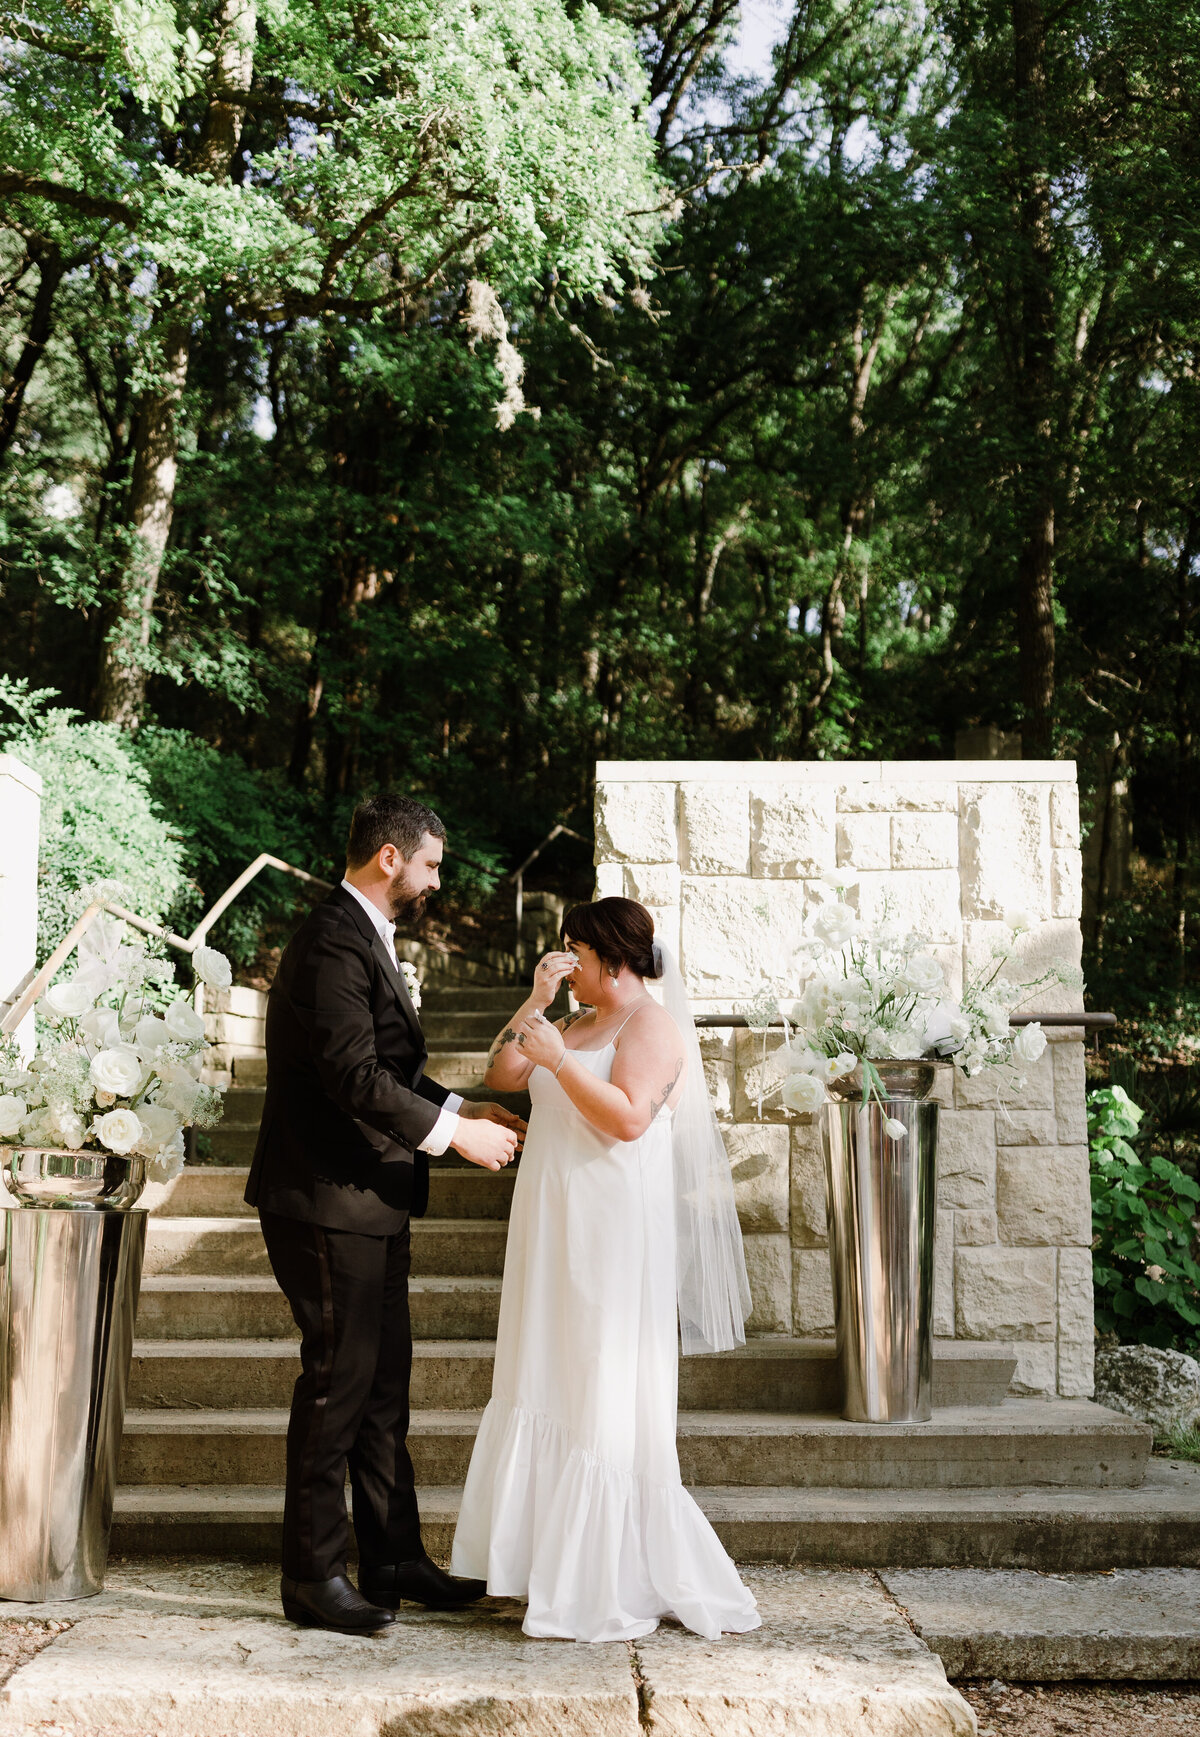 Bride wiping away tears at Umlauf Sculpture Garden, Austin